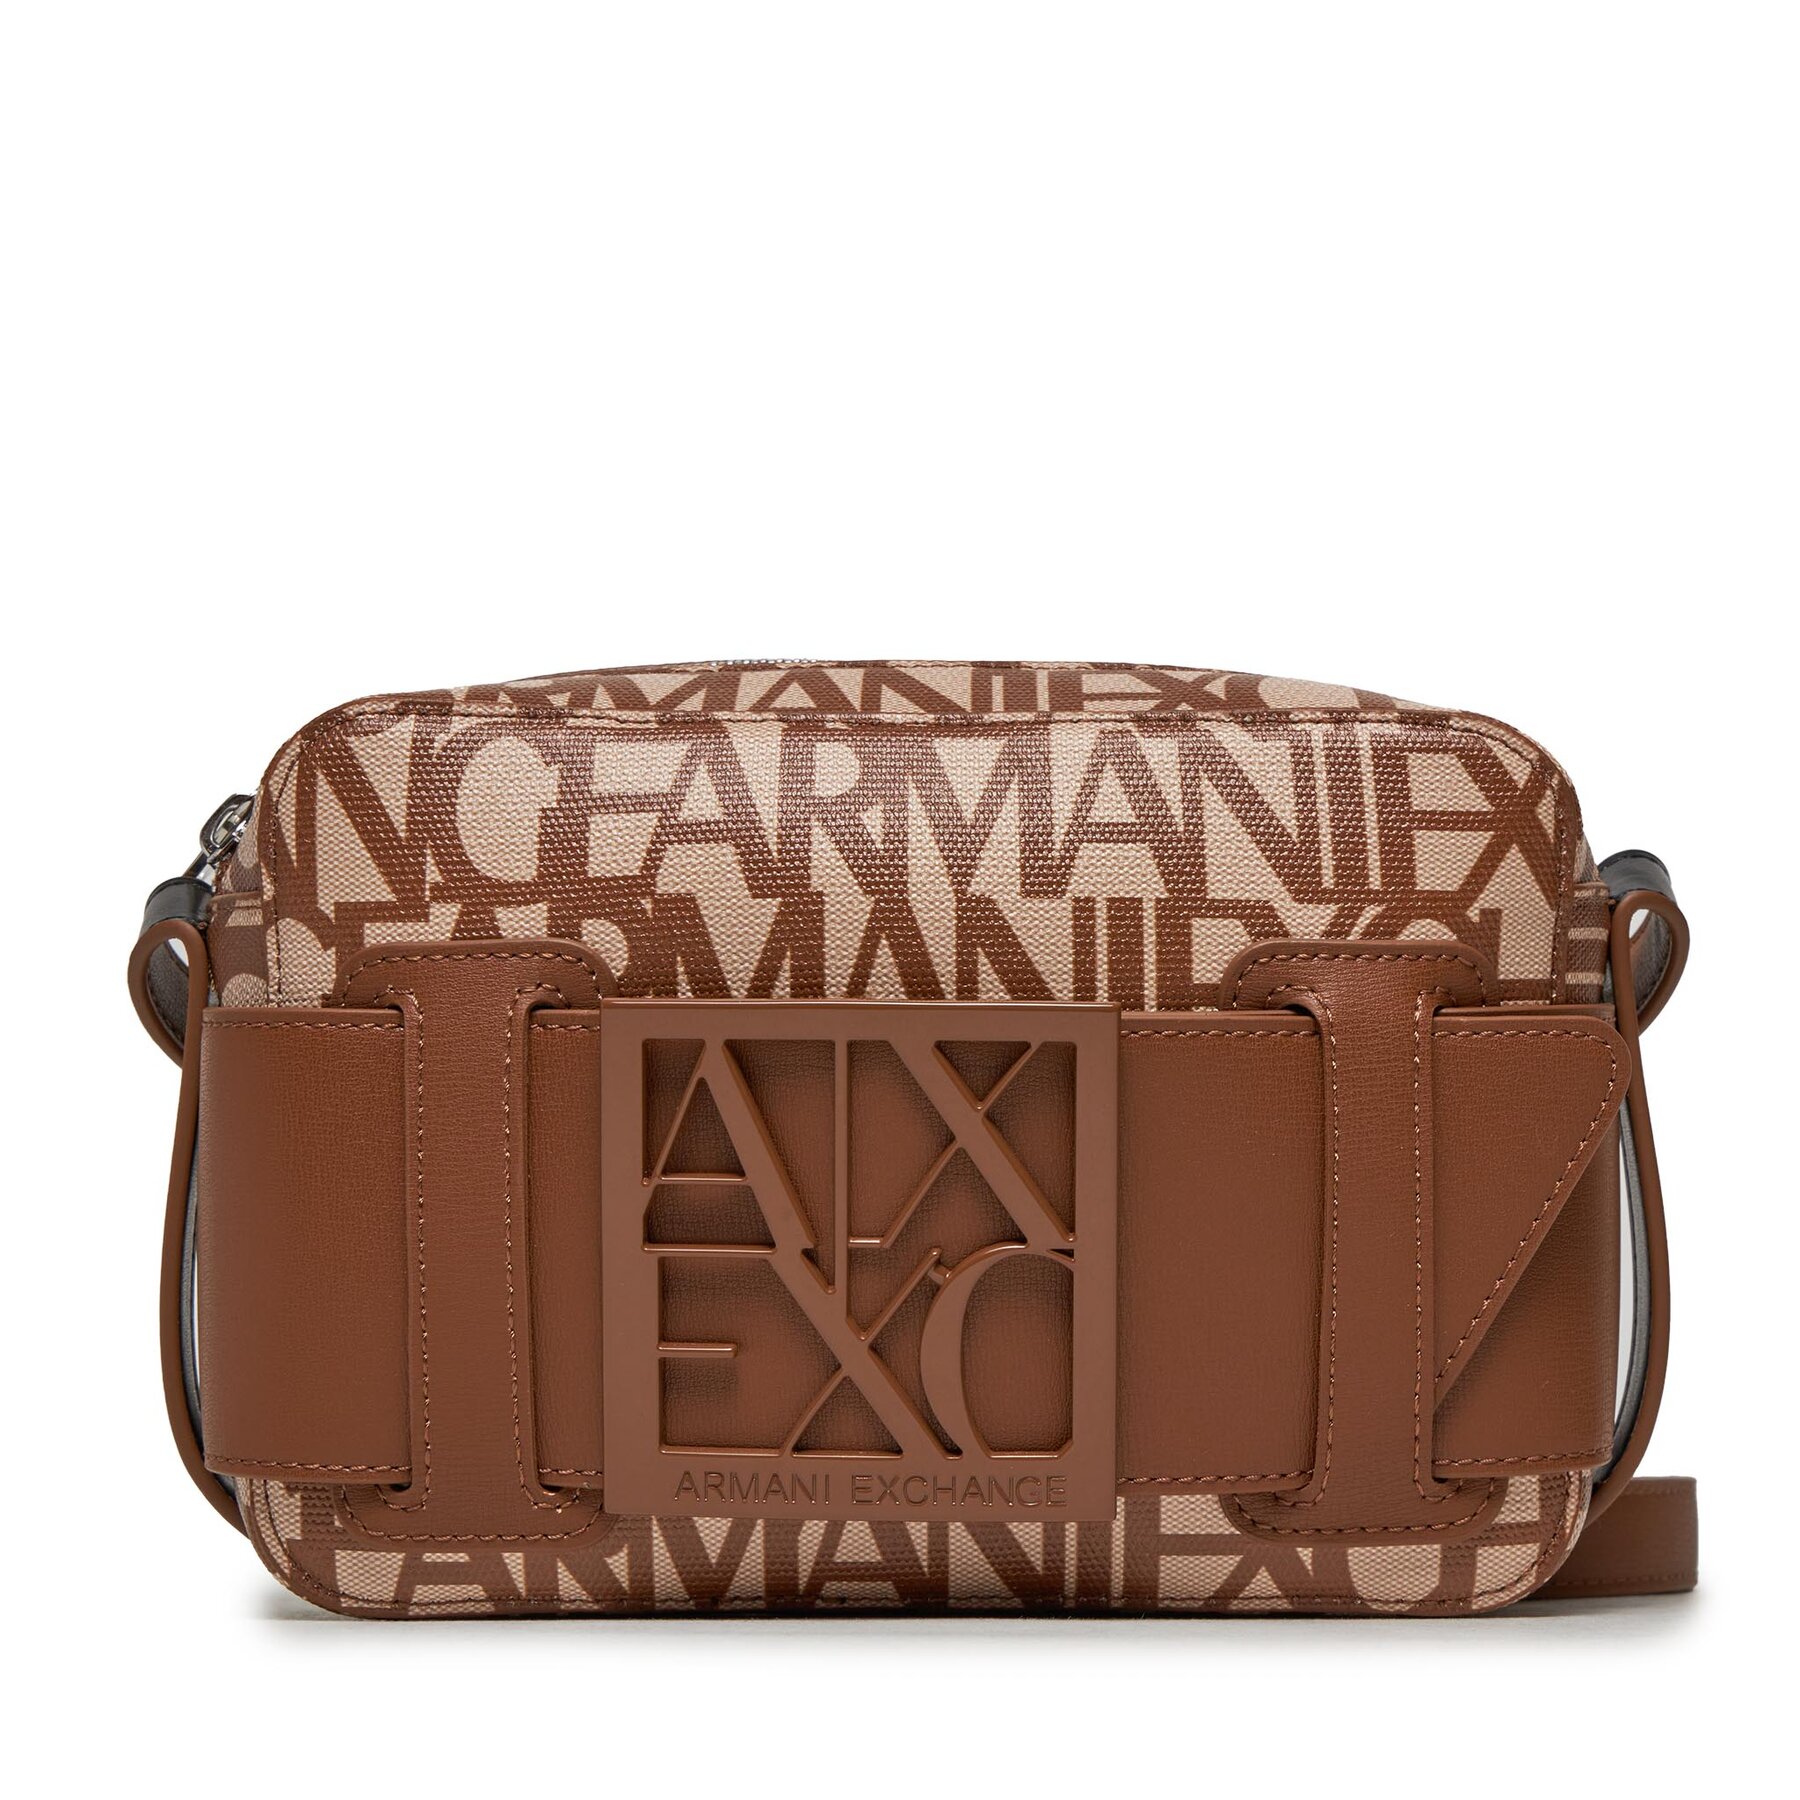 Handtasche Armani Exchange 942699 3F742 17511 Off White/Cuoio von Armani Exchange